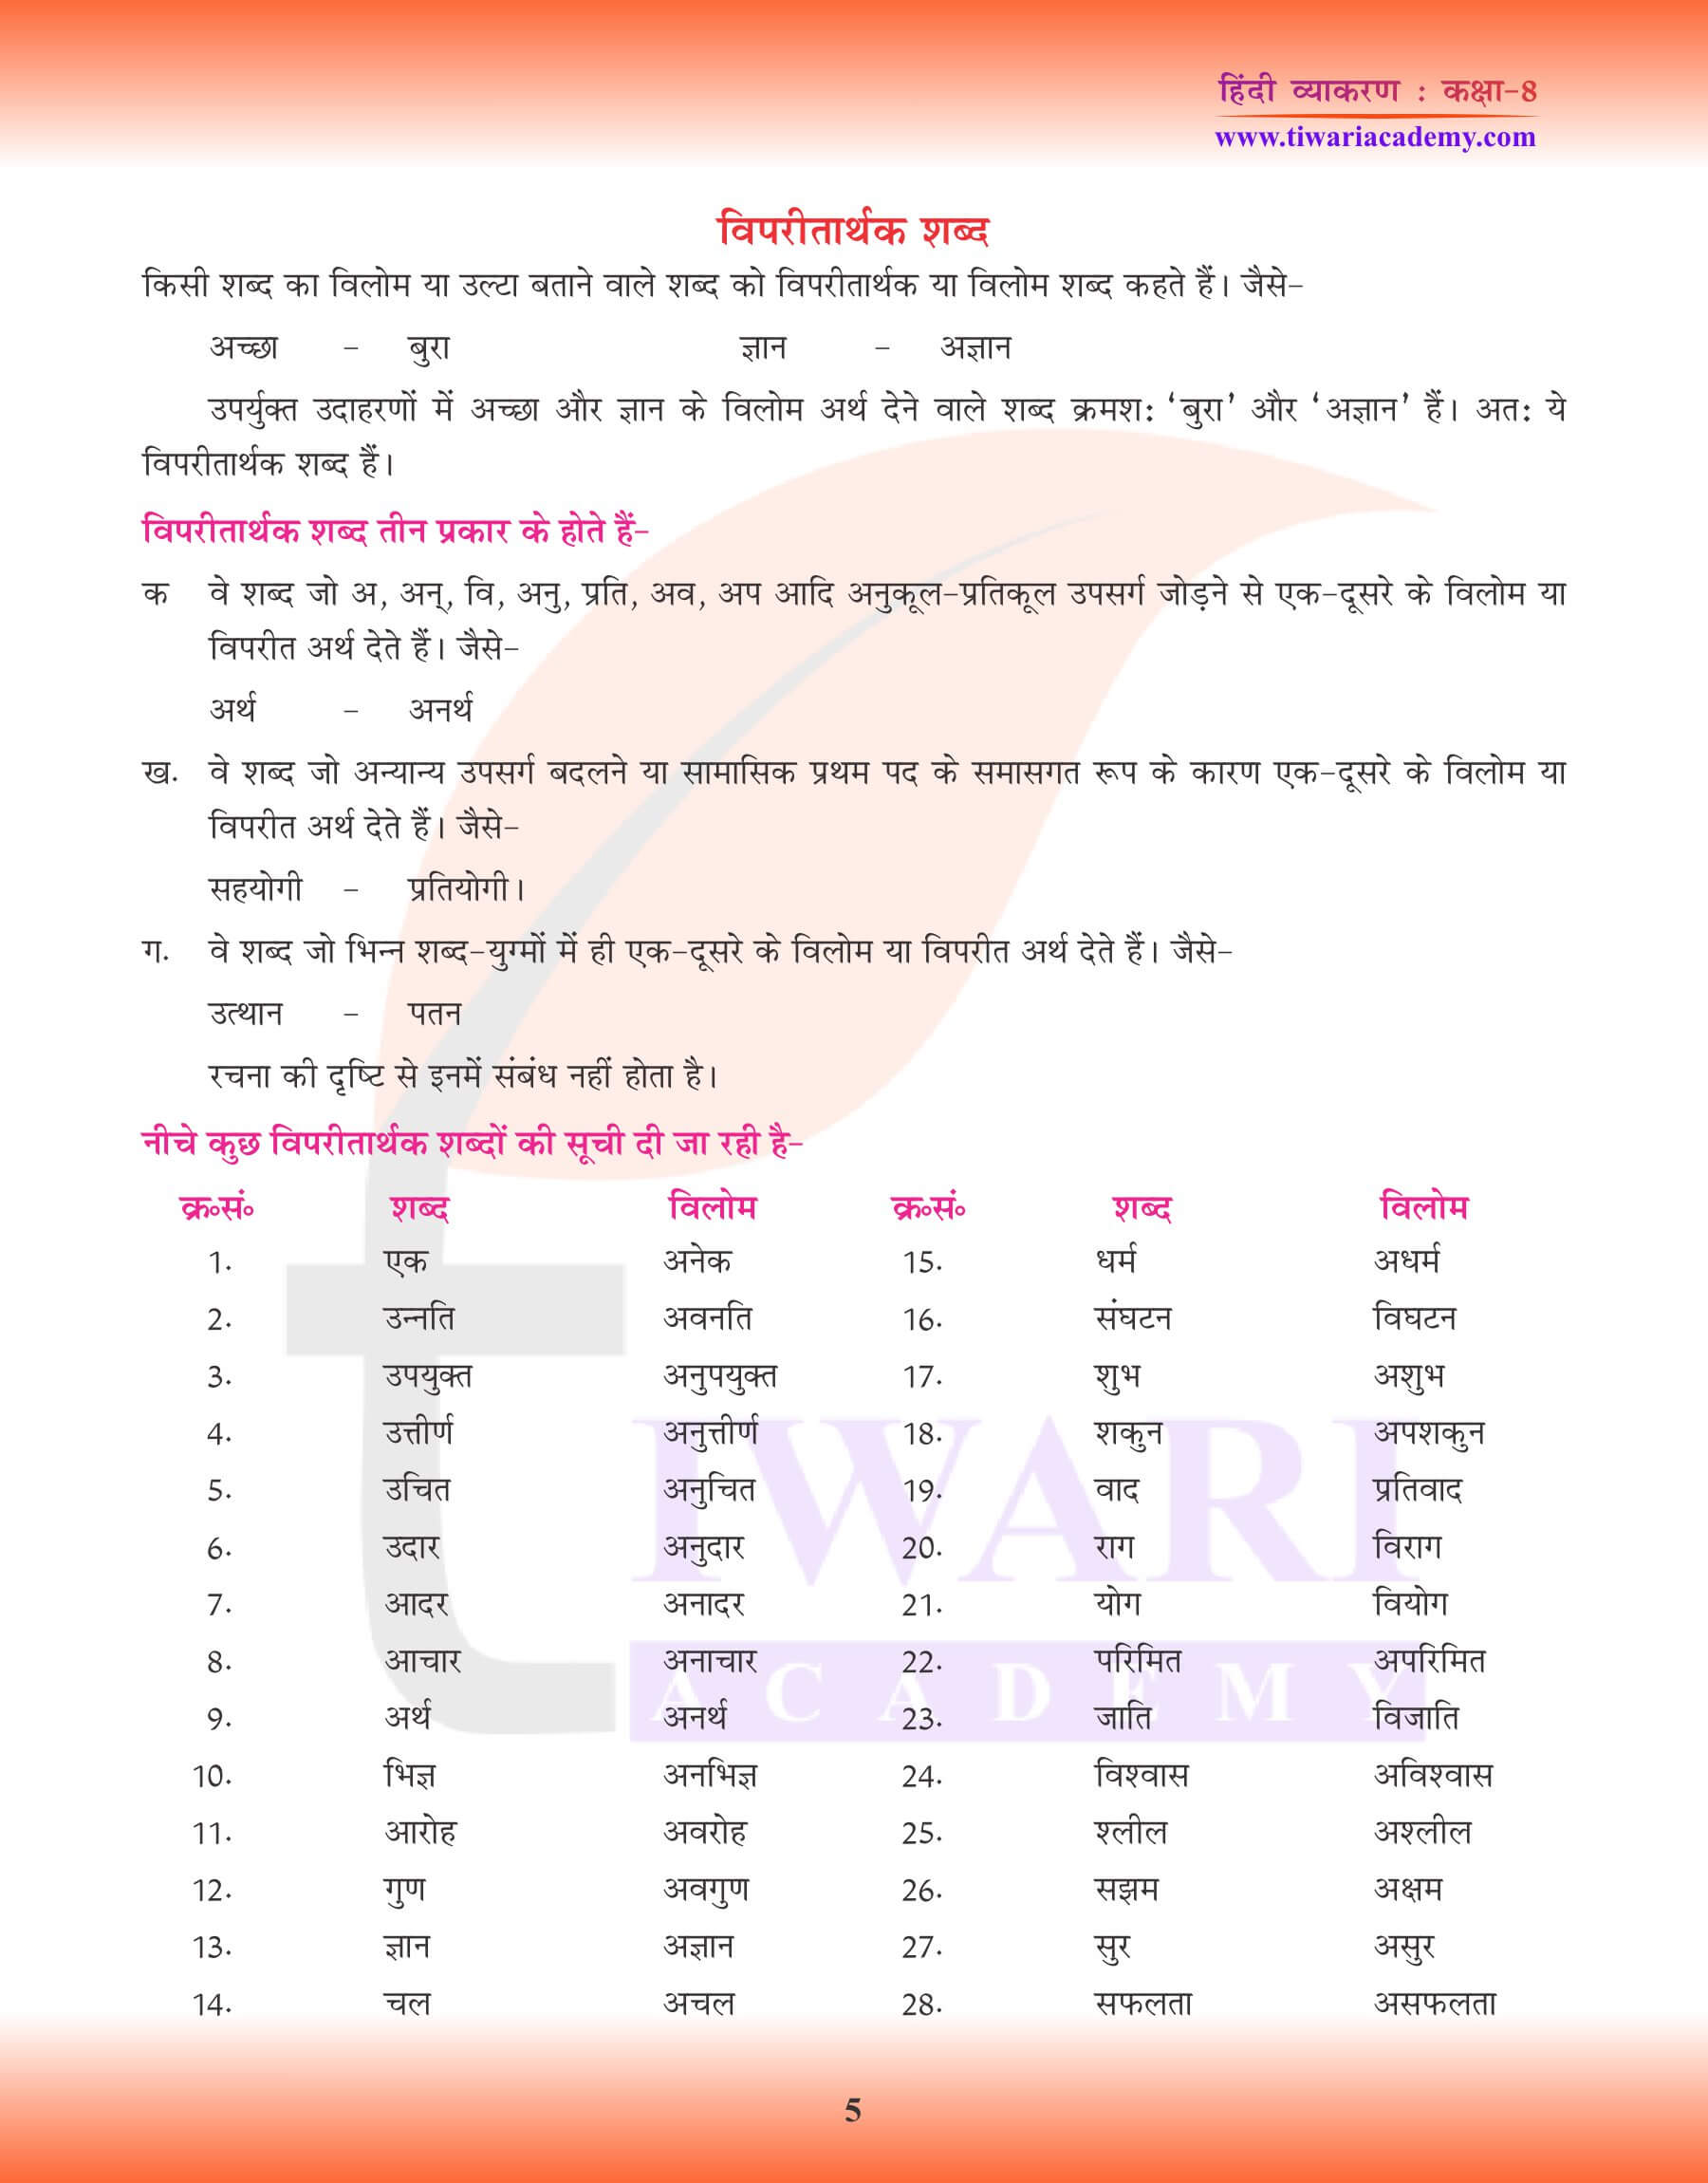 कक्षा 8 हिंदी व्याकरण में विलोम शब्द